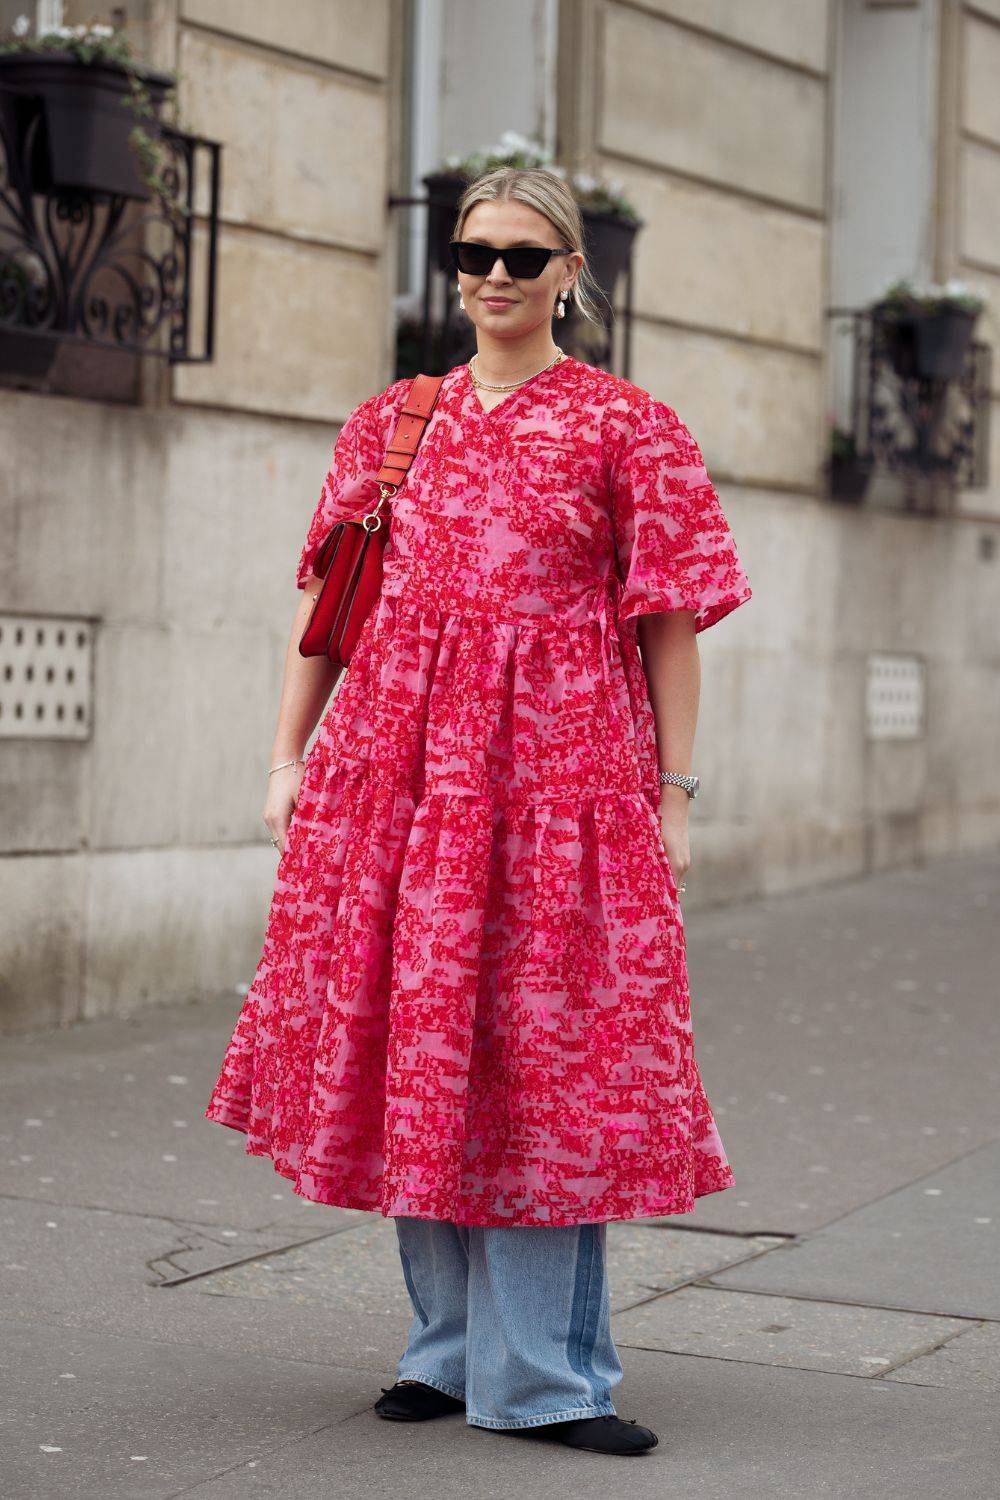 Zamiast w chłodne dni nosić rajstopy do sukienki, wypróbujcie romantyczne sukienki w duecie z jeansami (Fot. Getty Images)